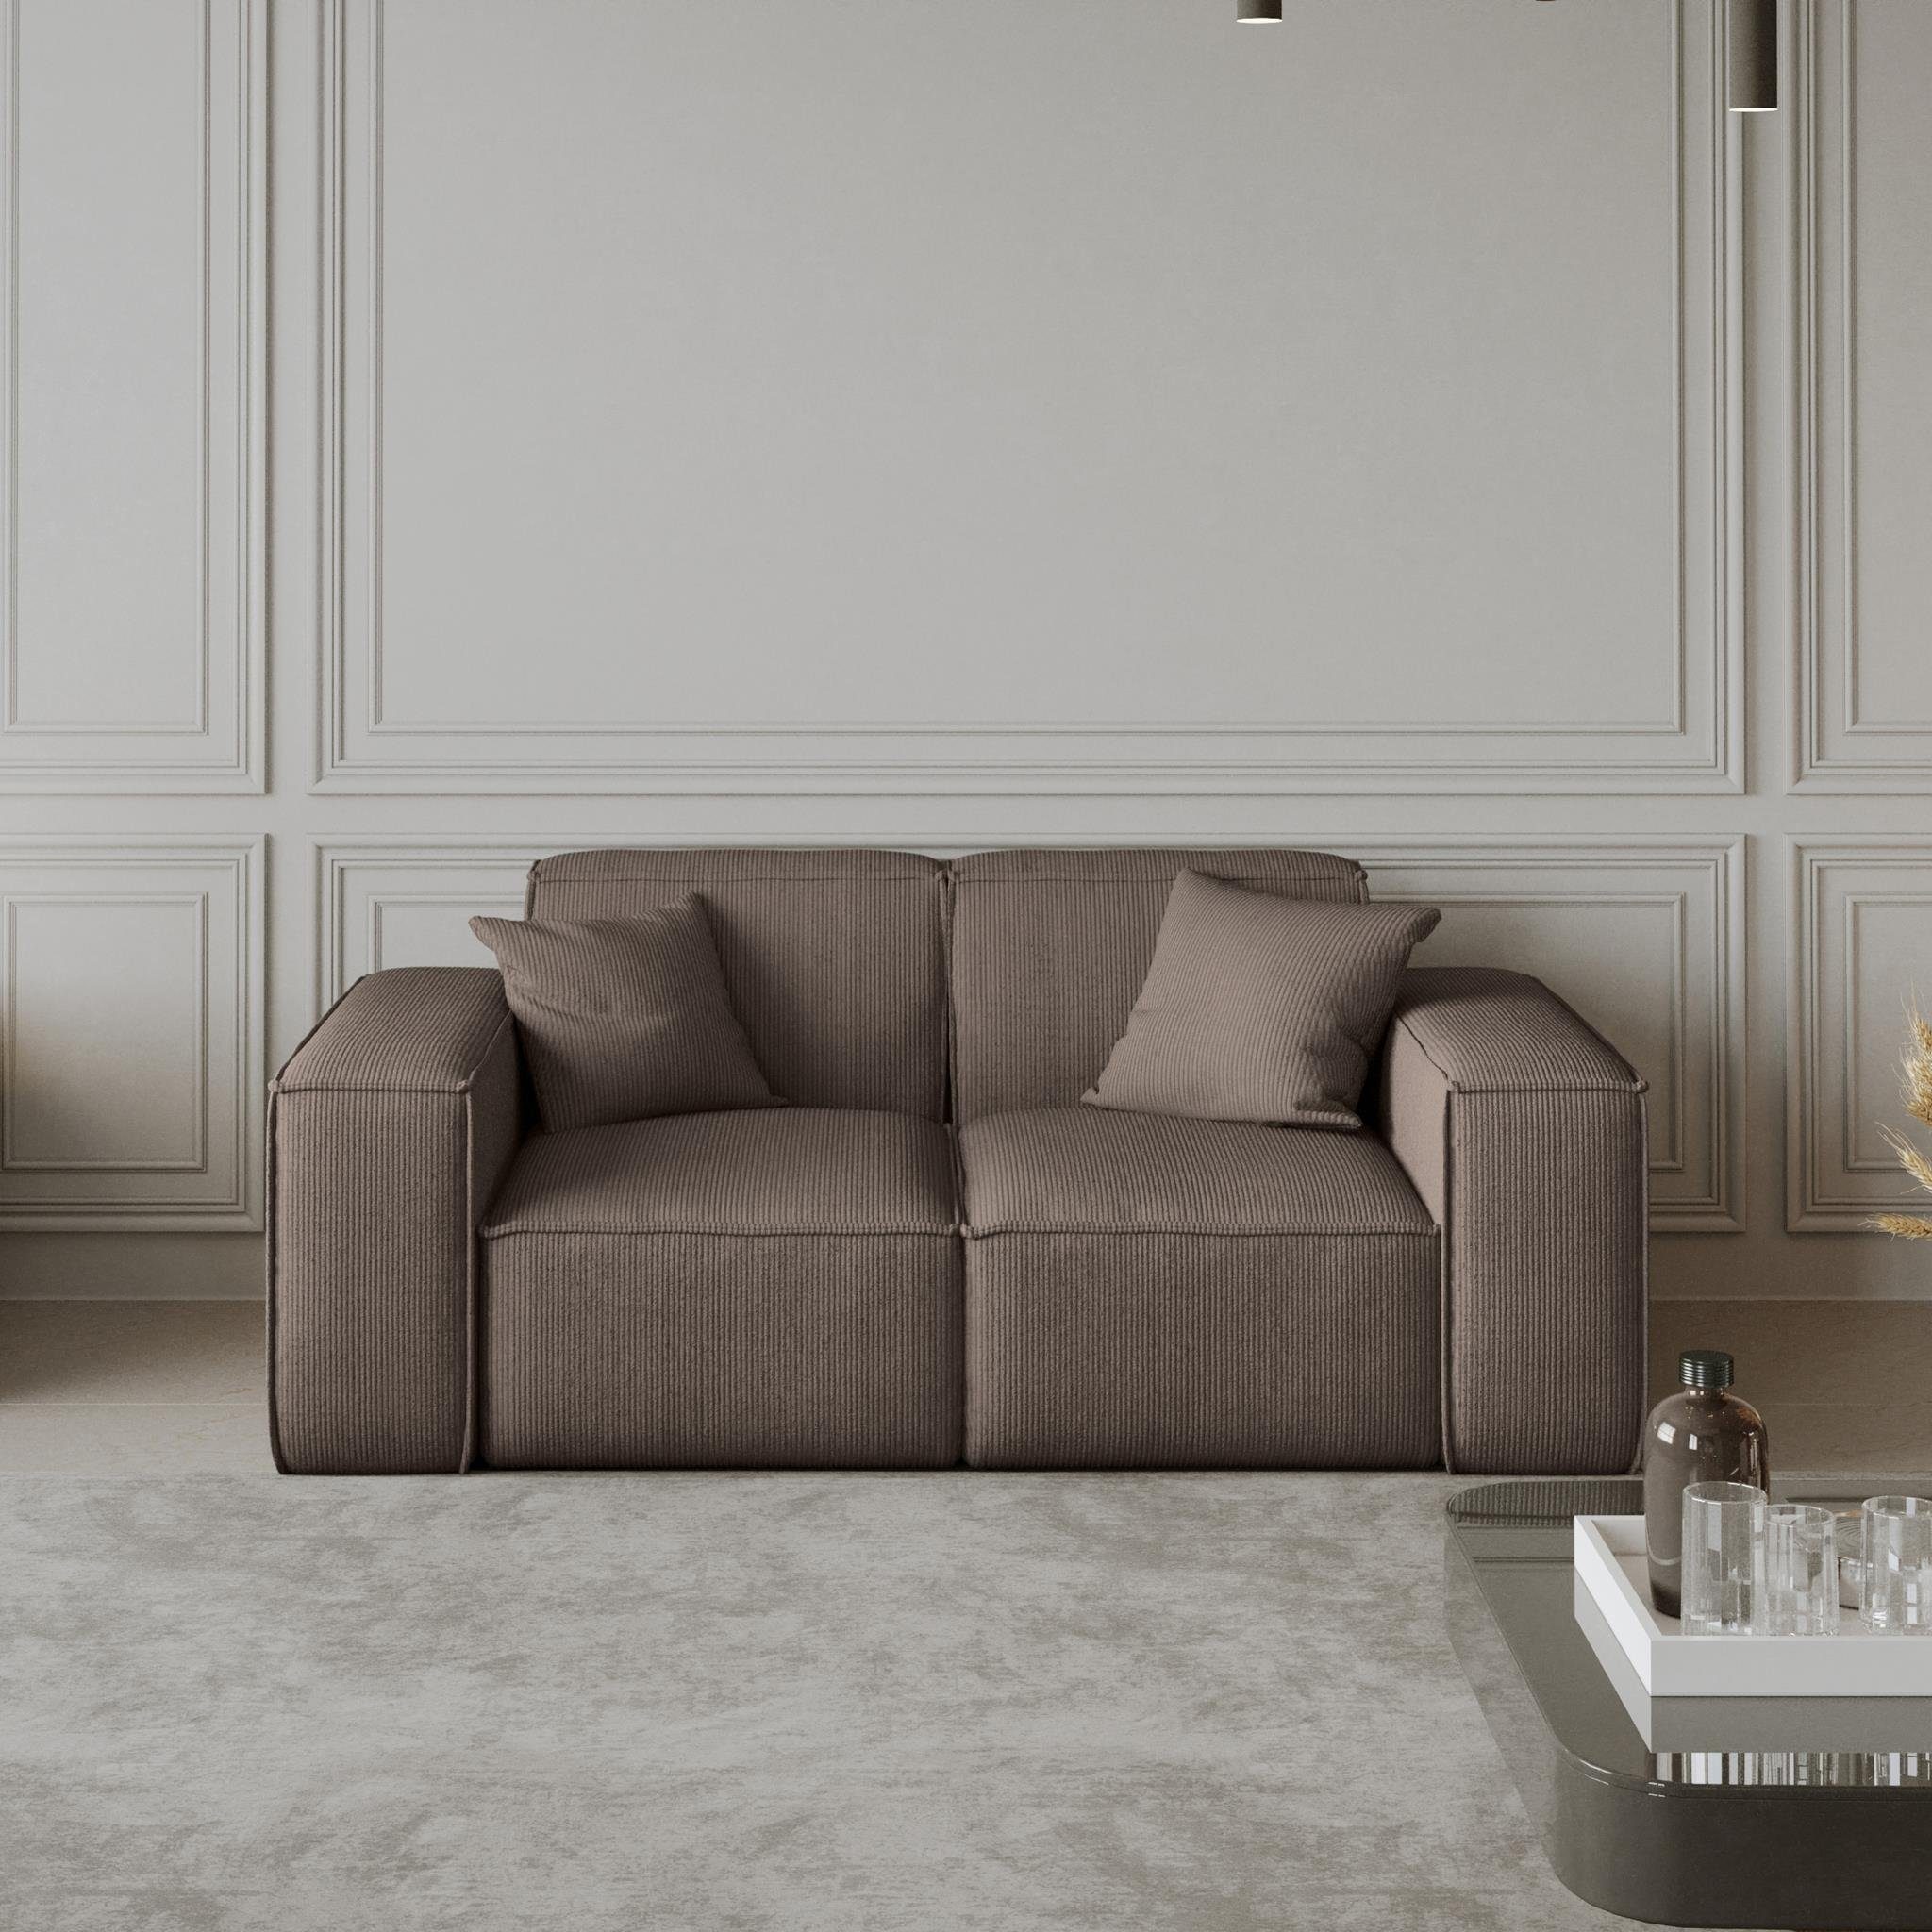 Breite Wellenfedern, aus Stil, Sofa Cordstoff modernes Sofa Zweisitzer Armlehnen Velourstoff, Lugano, Beautysofa inlusive oder 2-Sitzer im mit